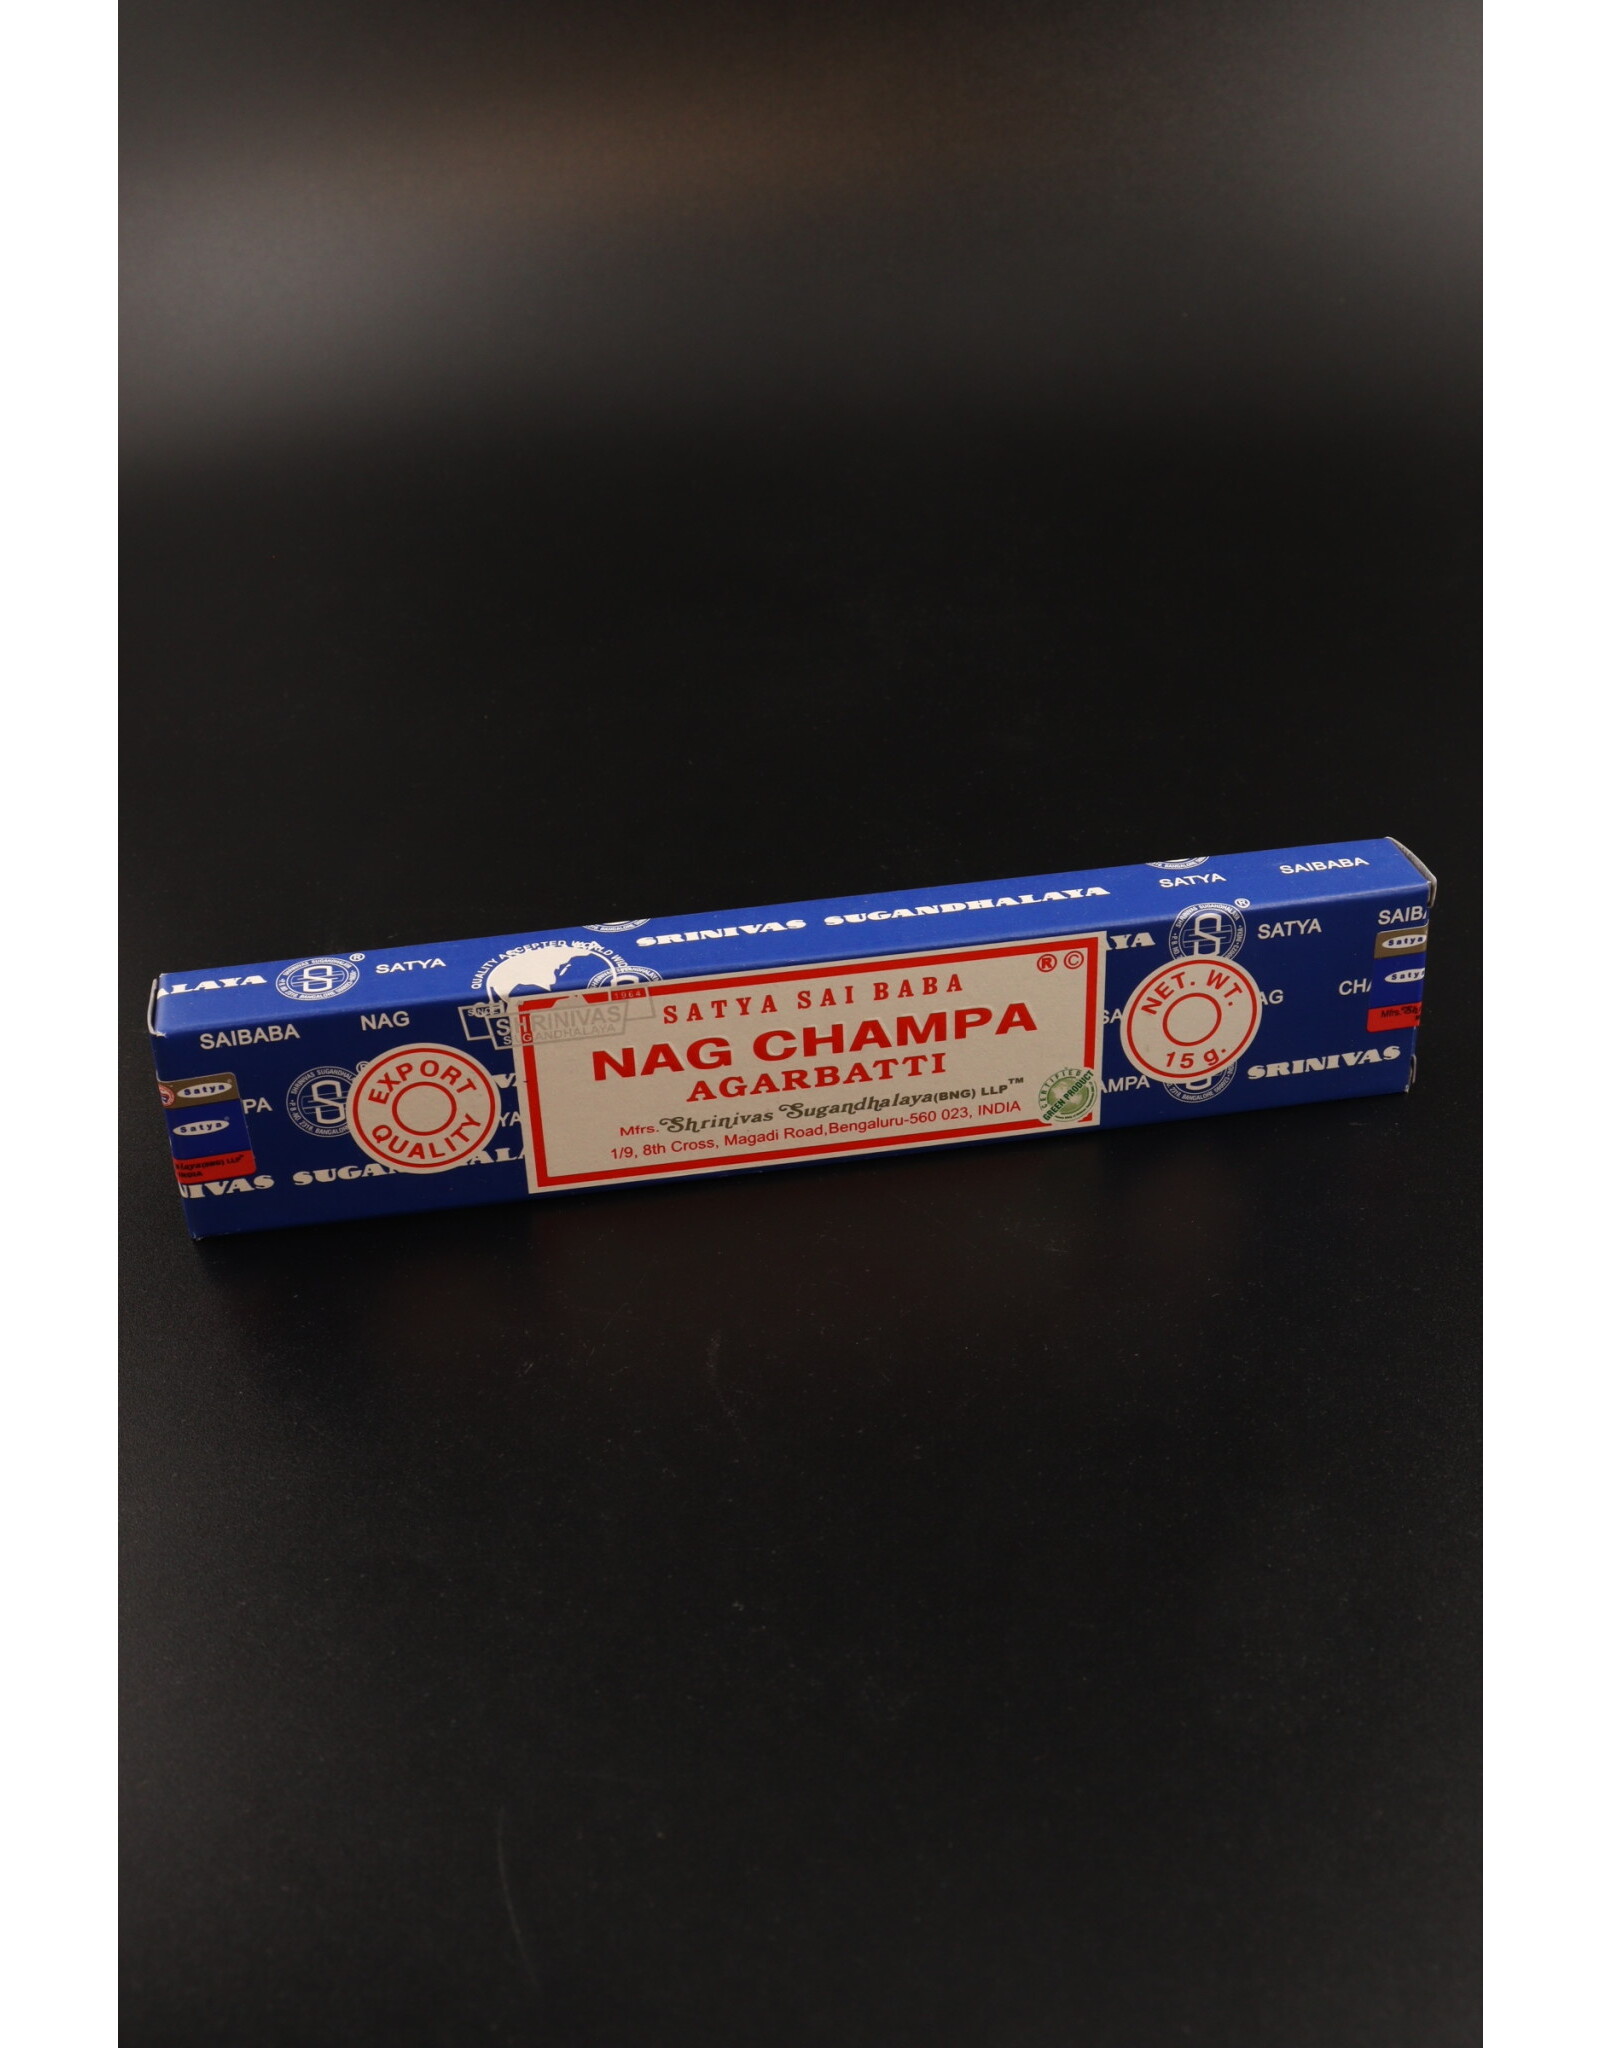 Song of India Nag Champa Incense 15G Box